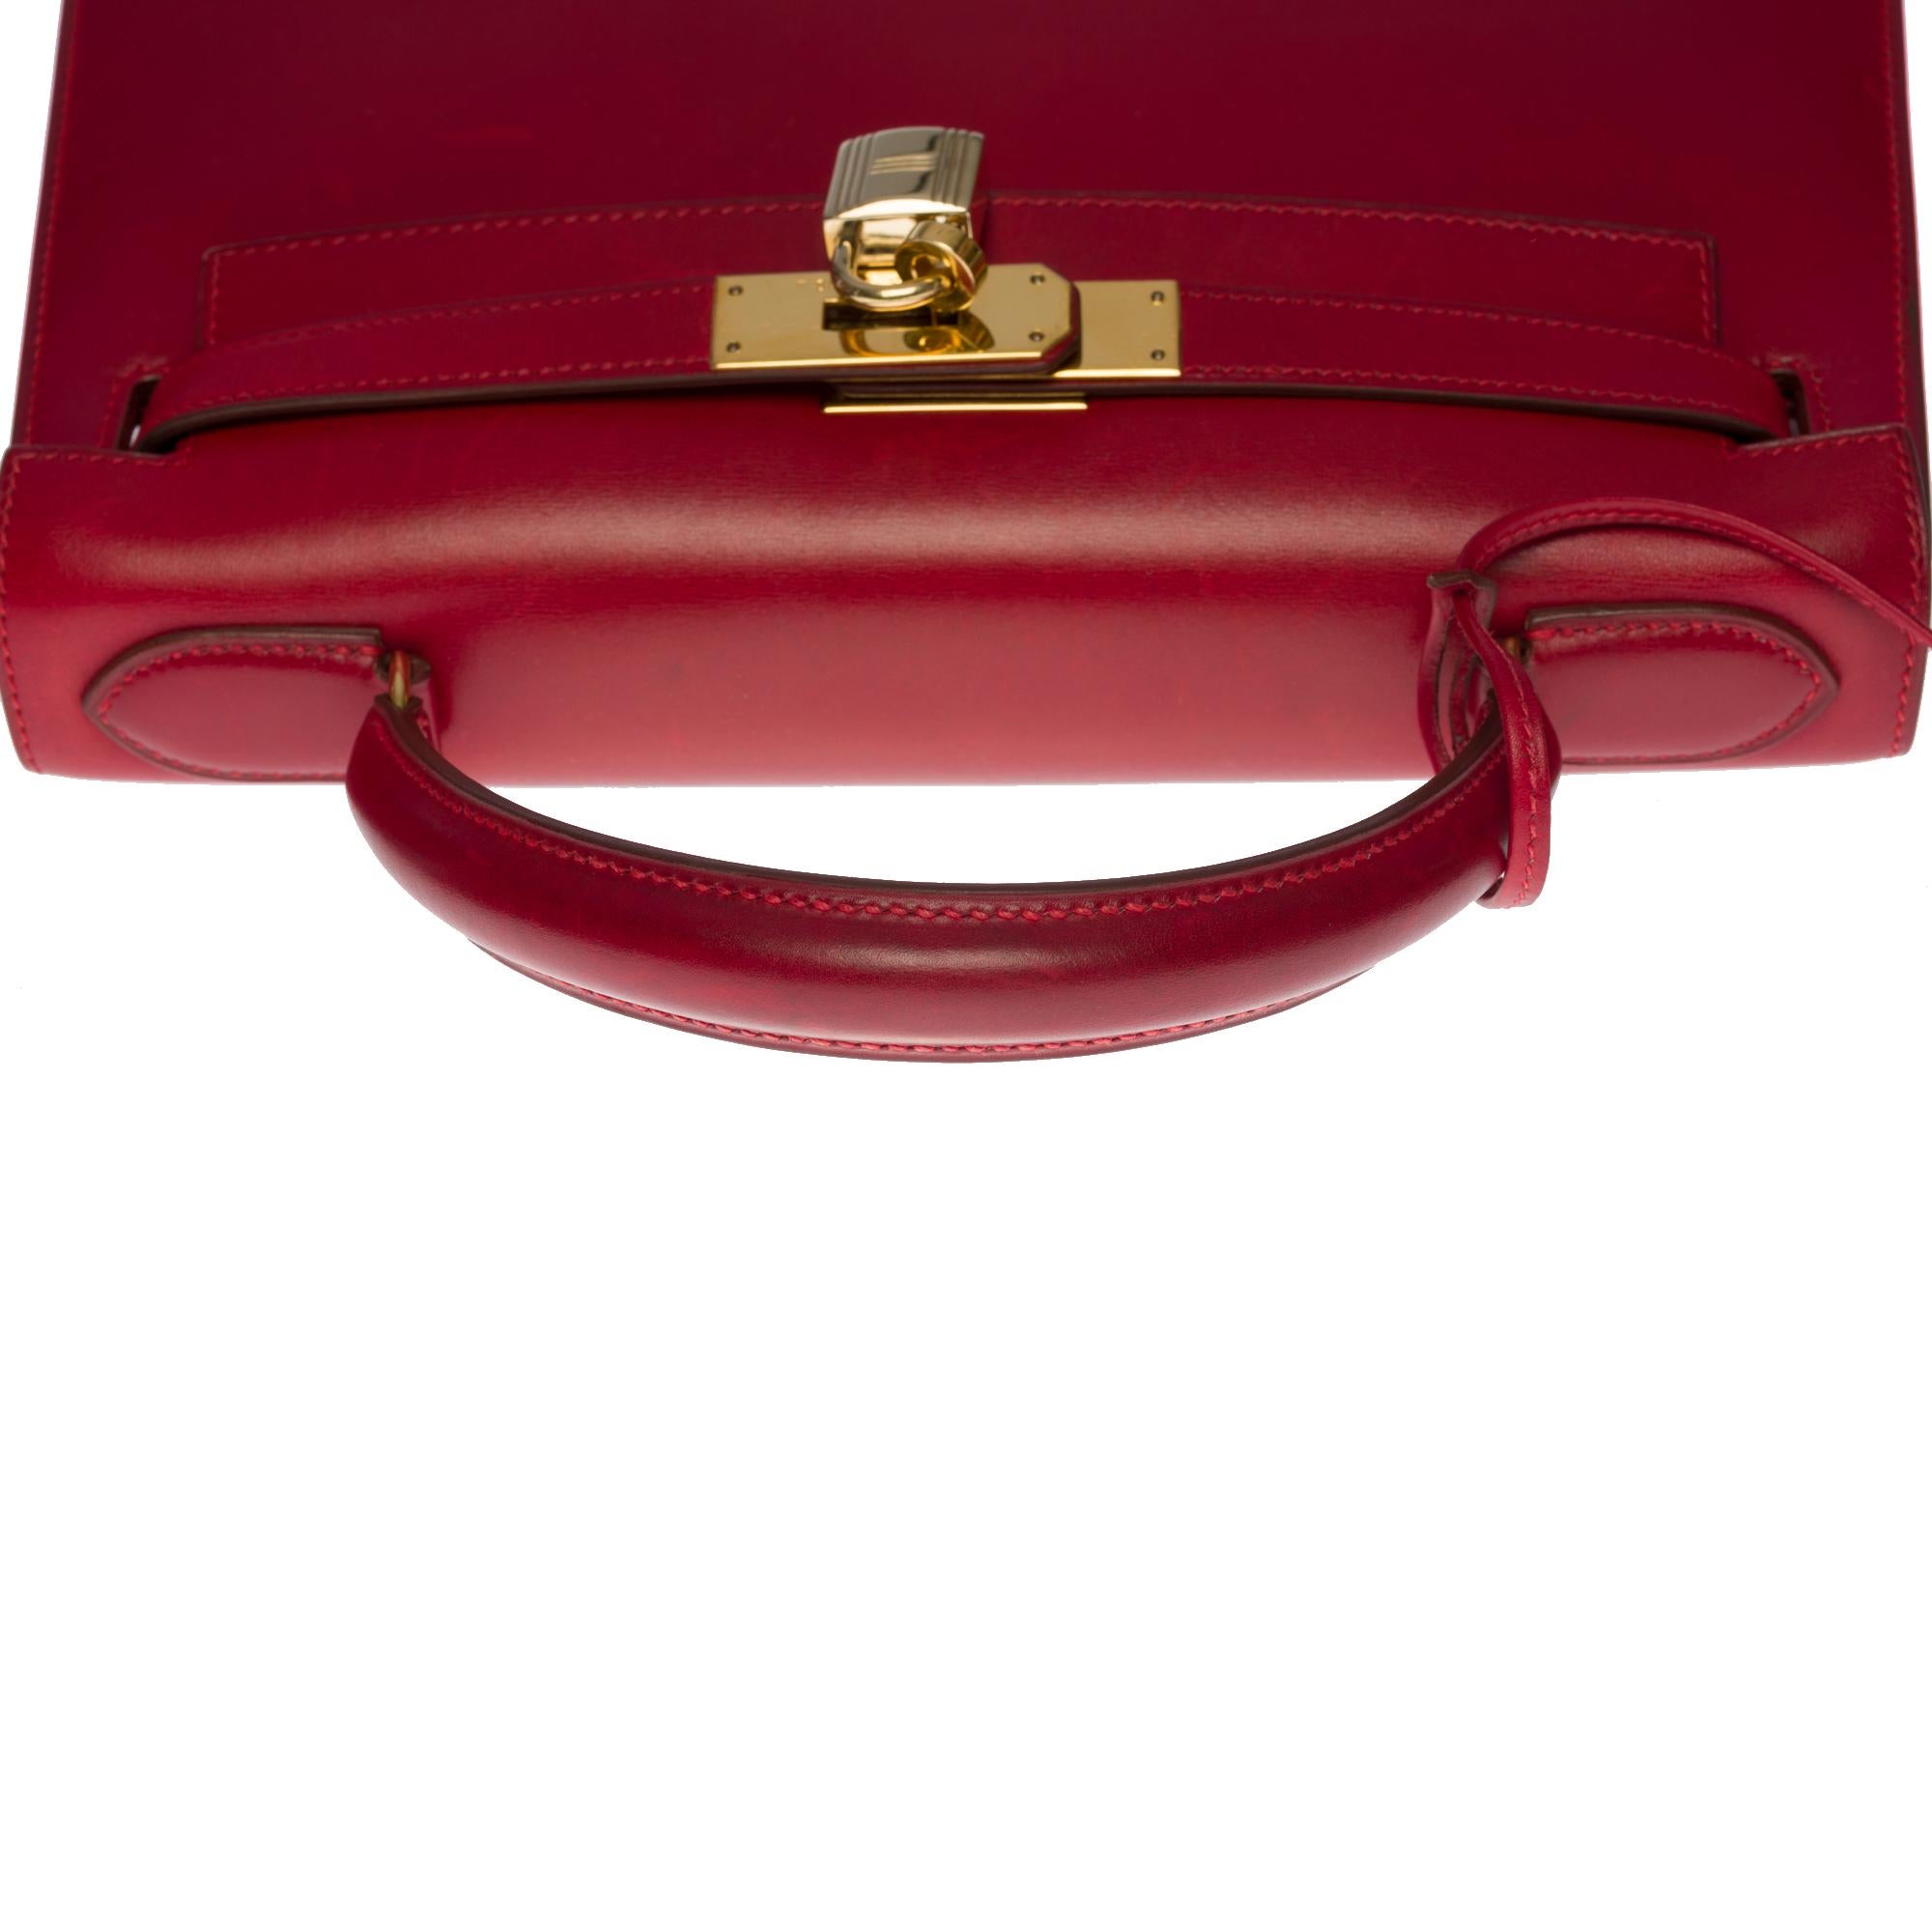 Außergewöhnliche Hermes Kelly 28 Sellier Handtasche aus Rouge H Box Kalbsleder, GHW 3